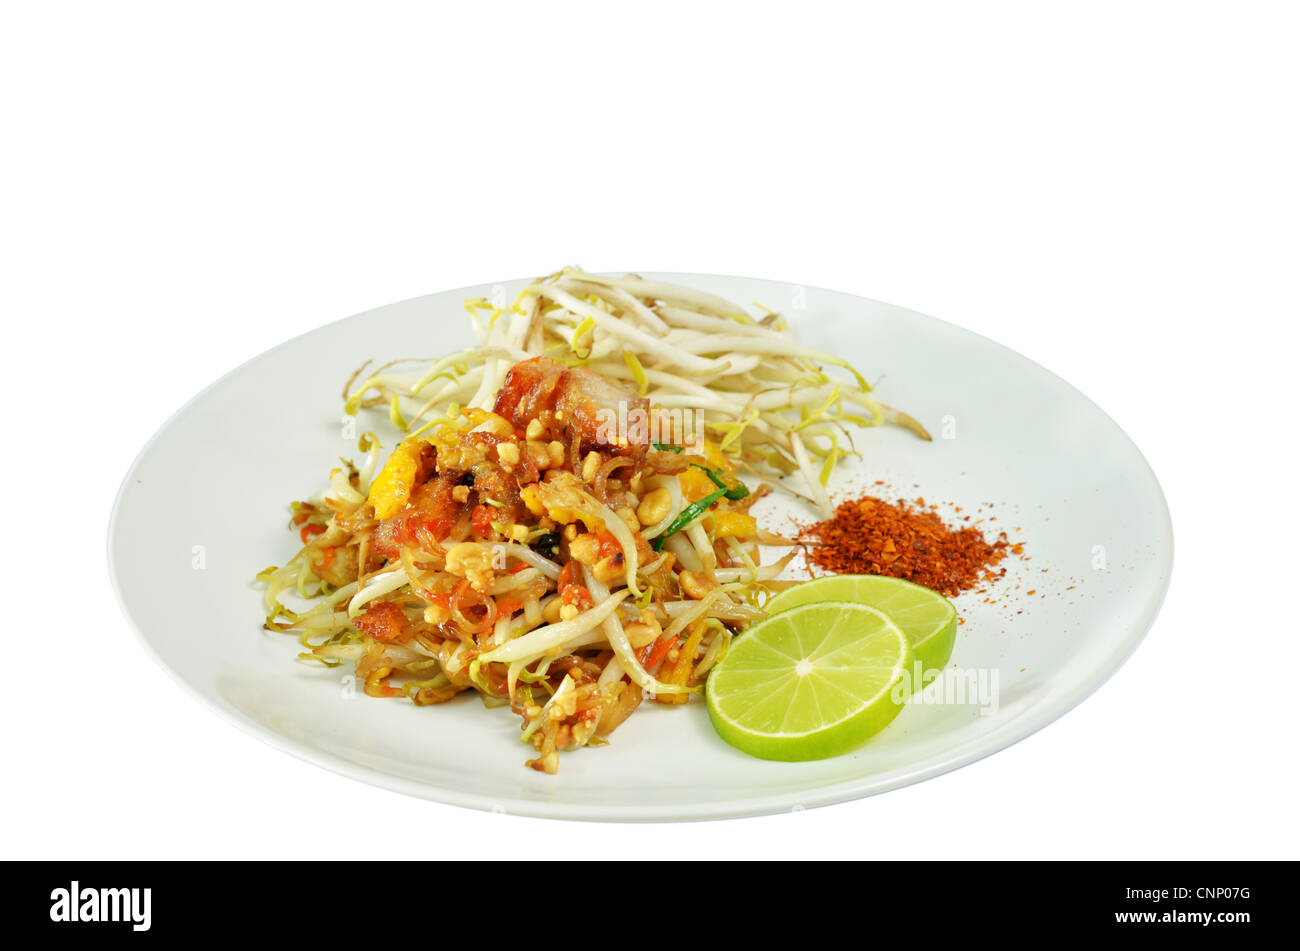 Lieblings-Thai-Küche, Thai-Food Pad Thai, Stir Fry Nudeln auf weiße Schale Stockfoto